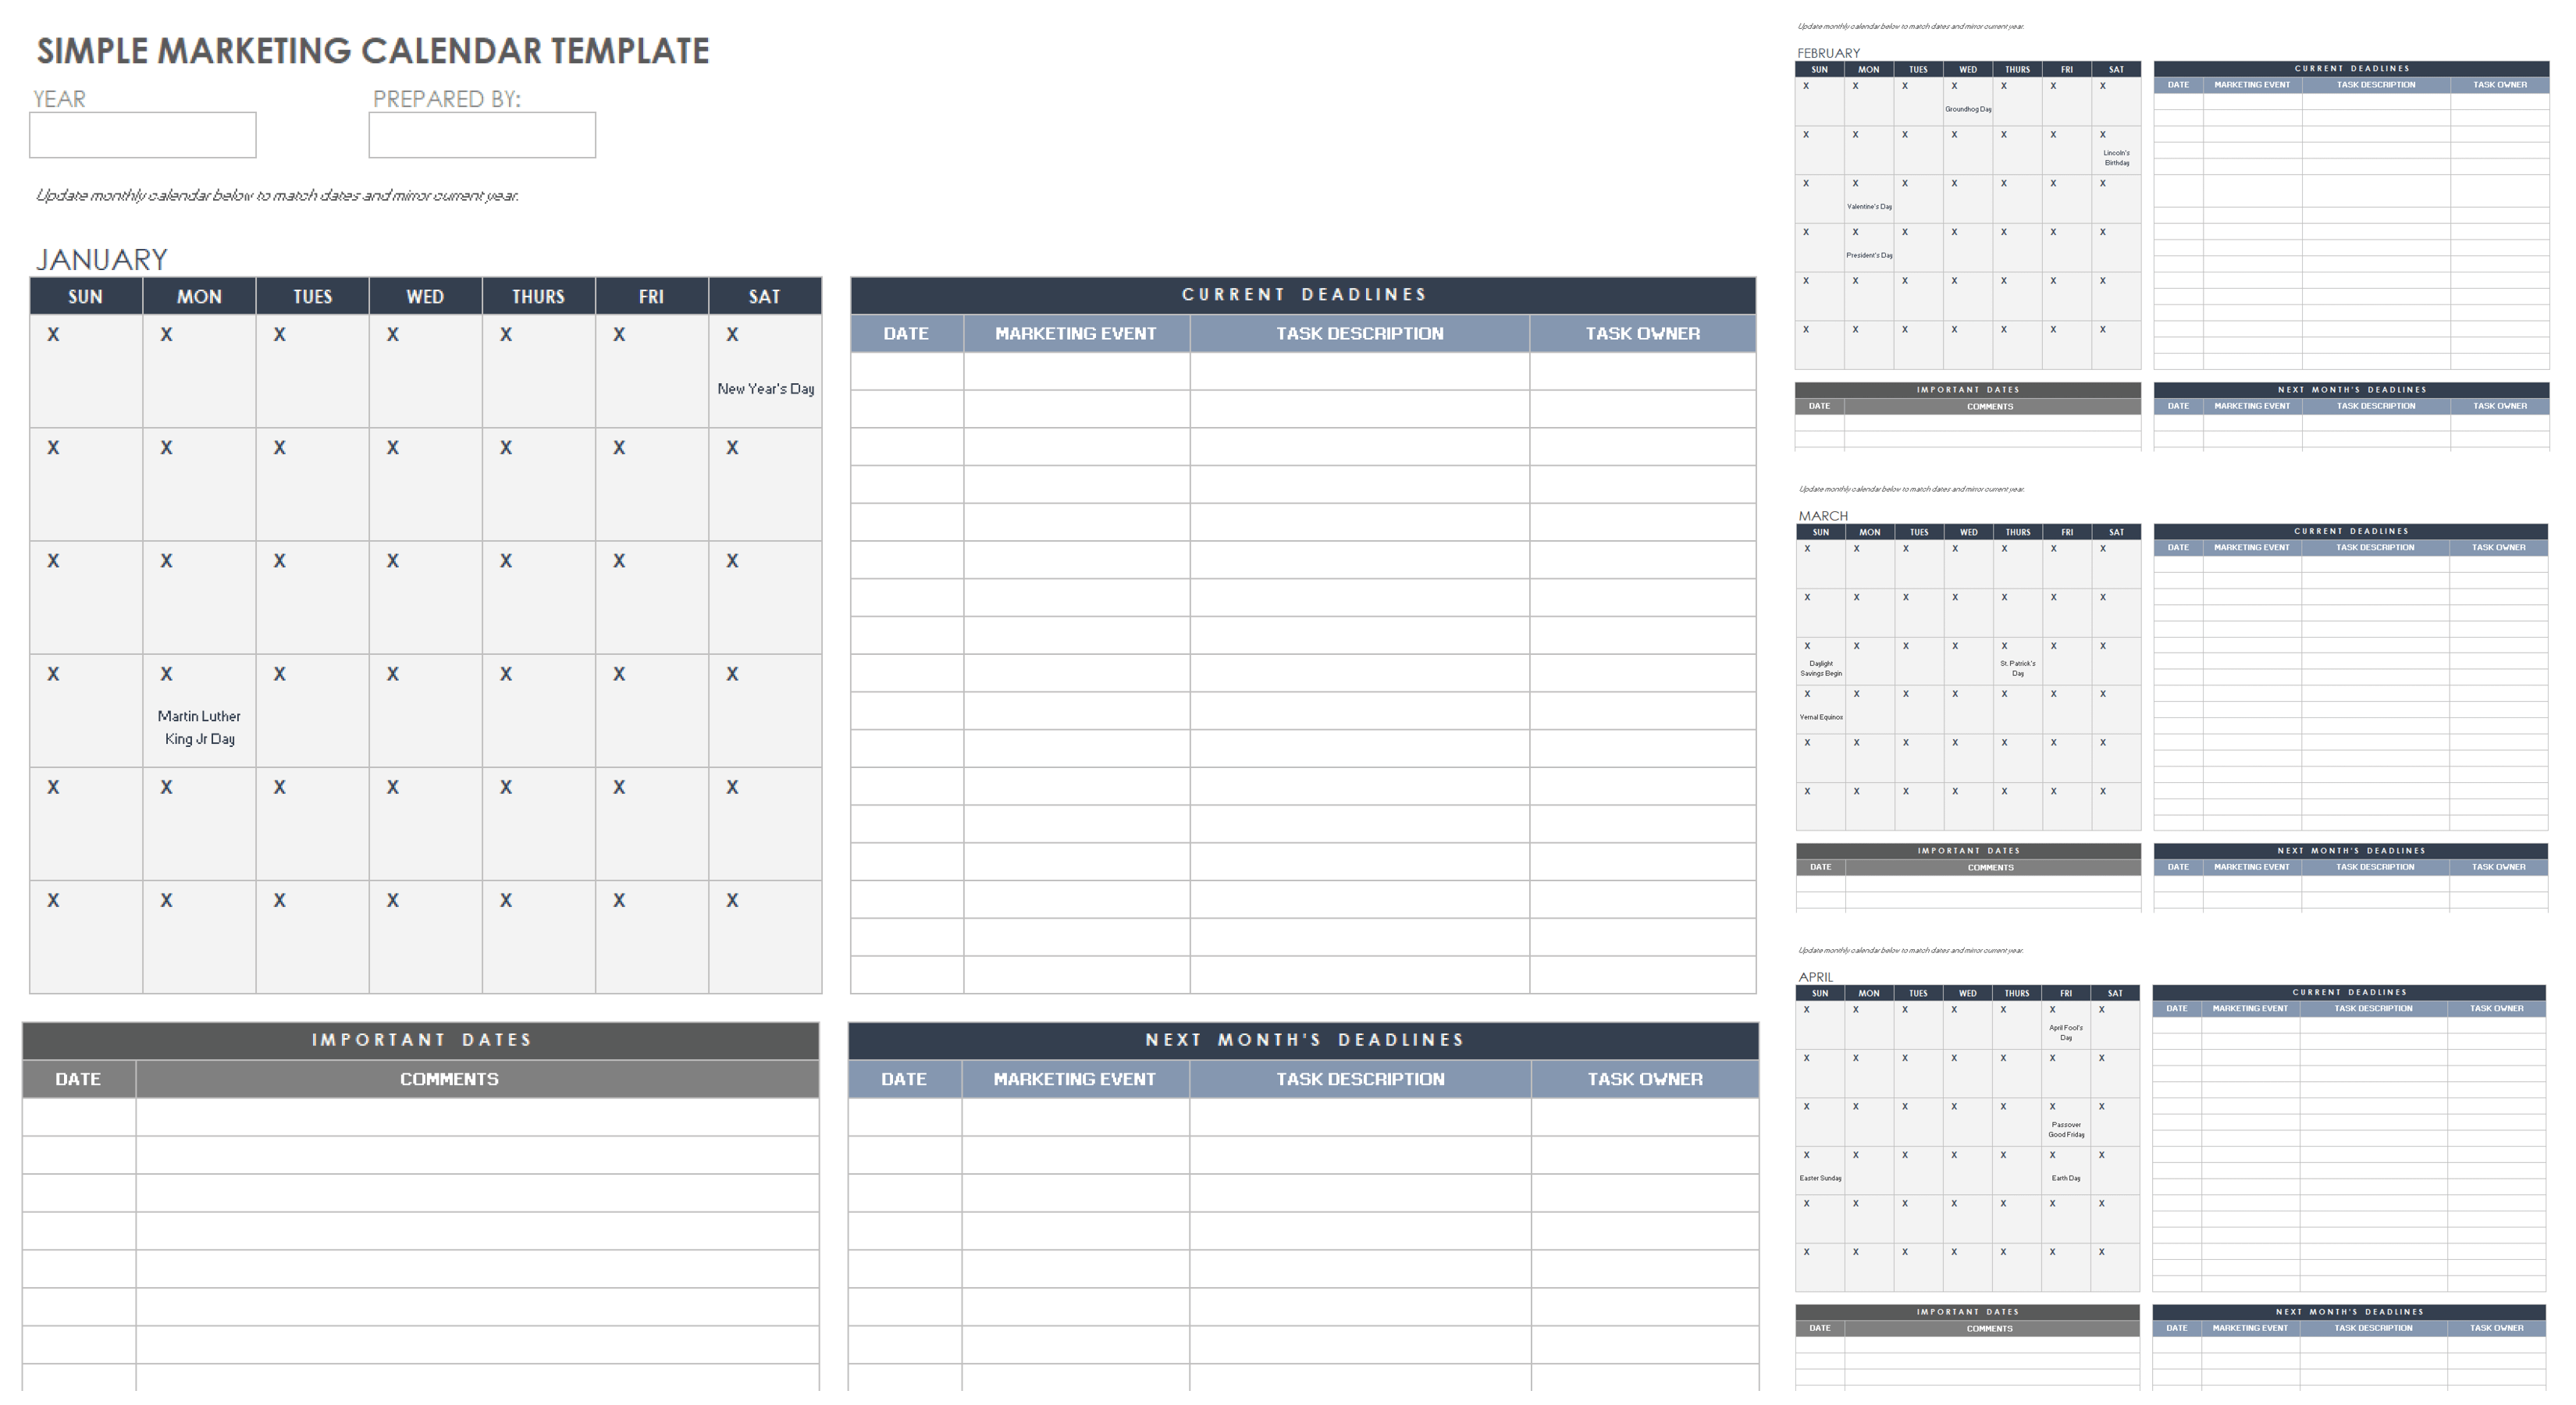 Simple Marketing Calendar Template